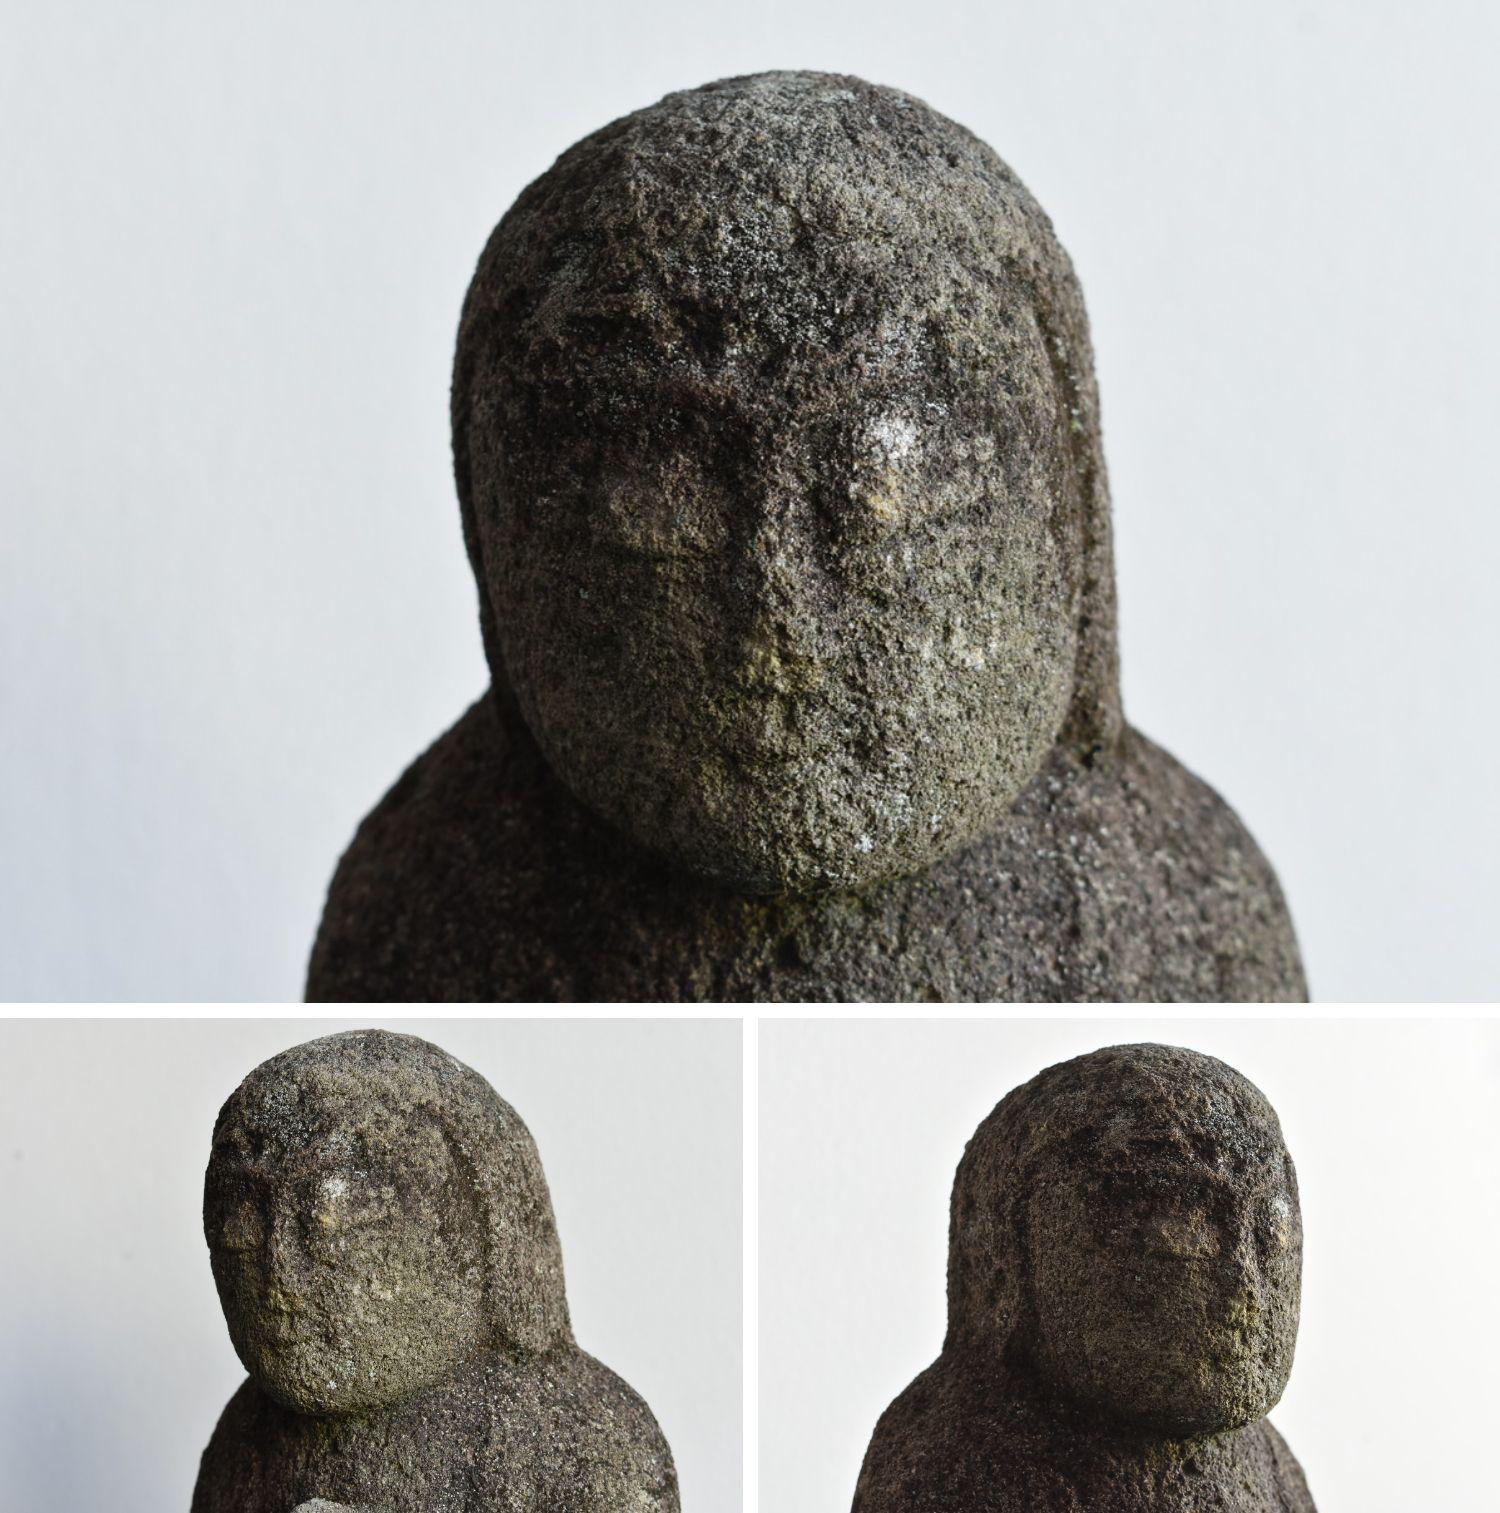 Edo 1750-1850 Japanese Old Stone Carving God / like a Stone Buddha / Garden Figurine